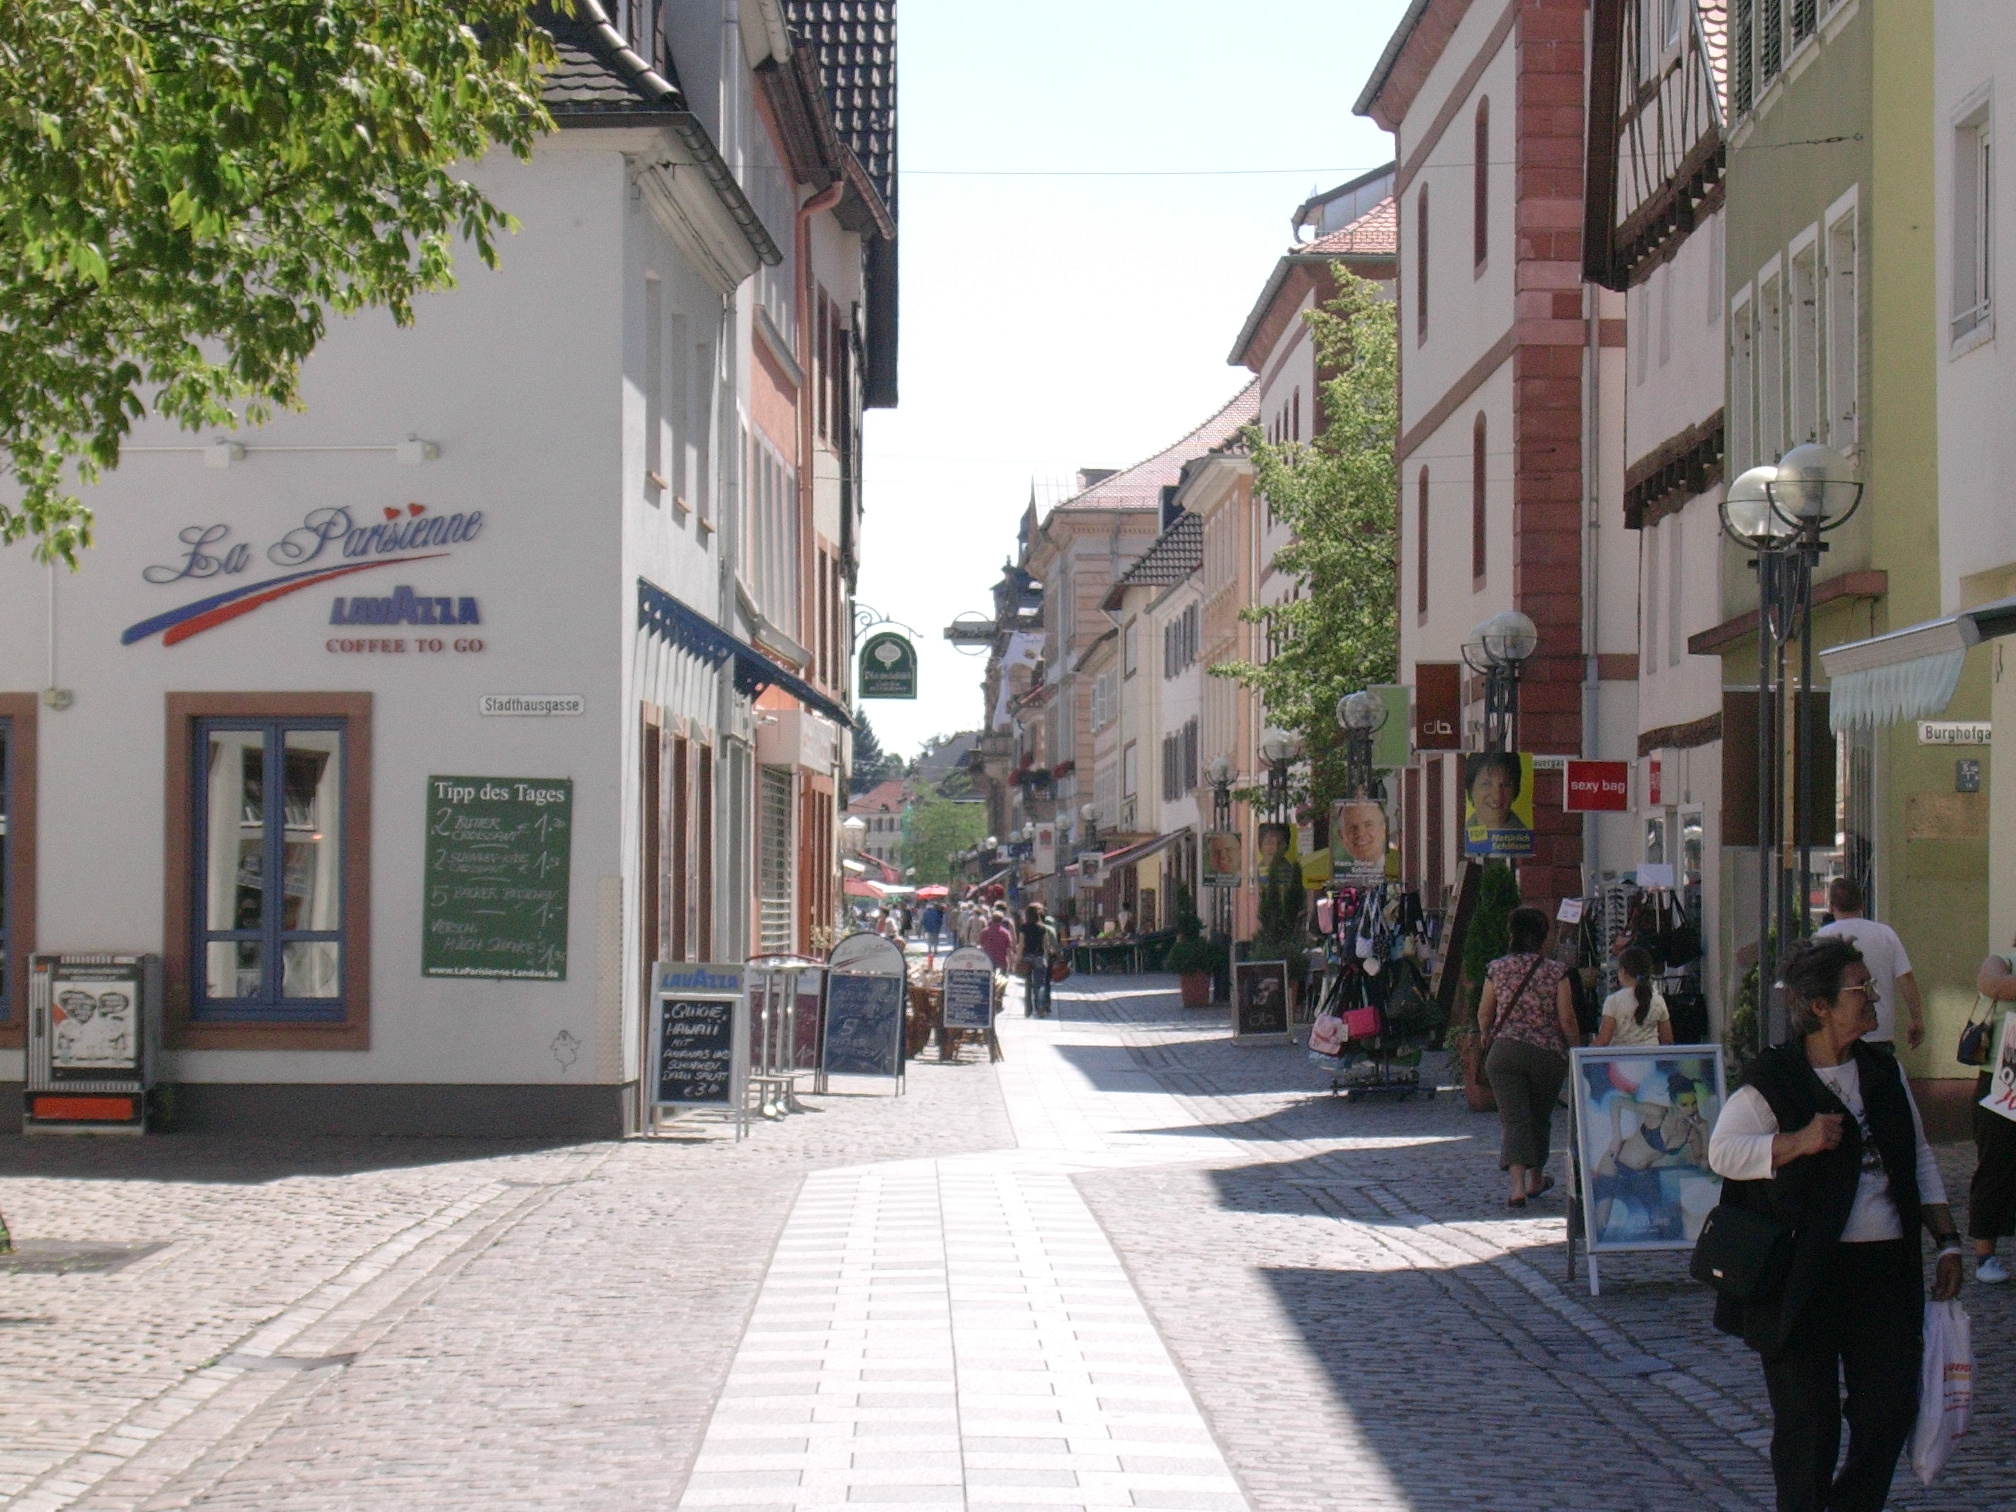 Die Marktstraße vom oberen Ende der Fußgängerzone aus gesehen